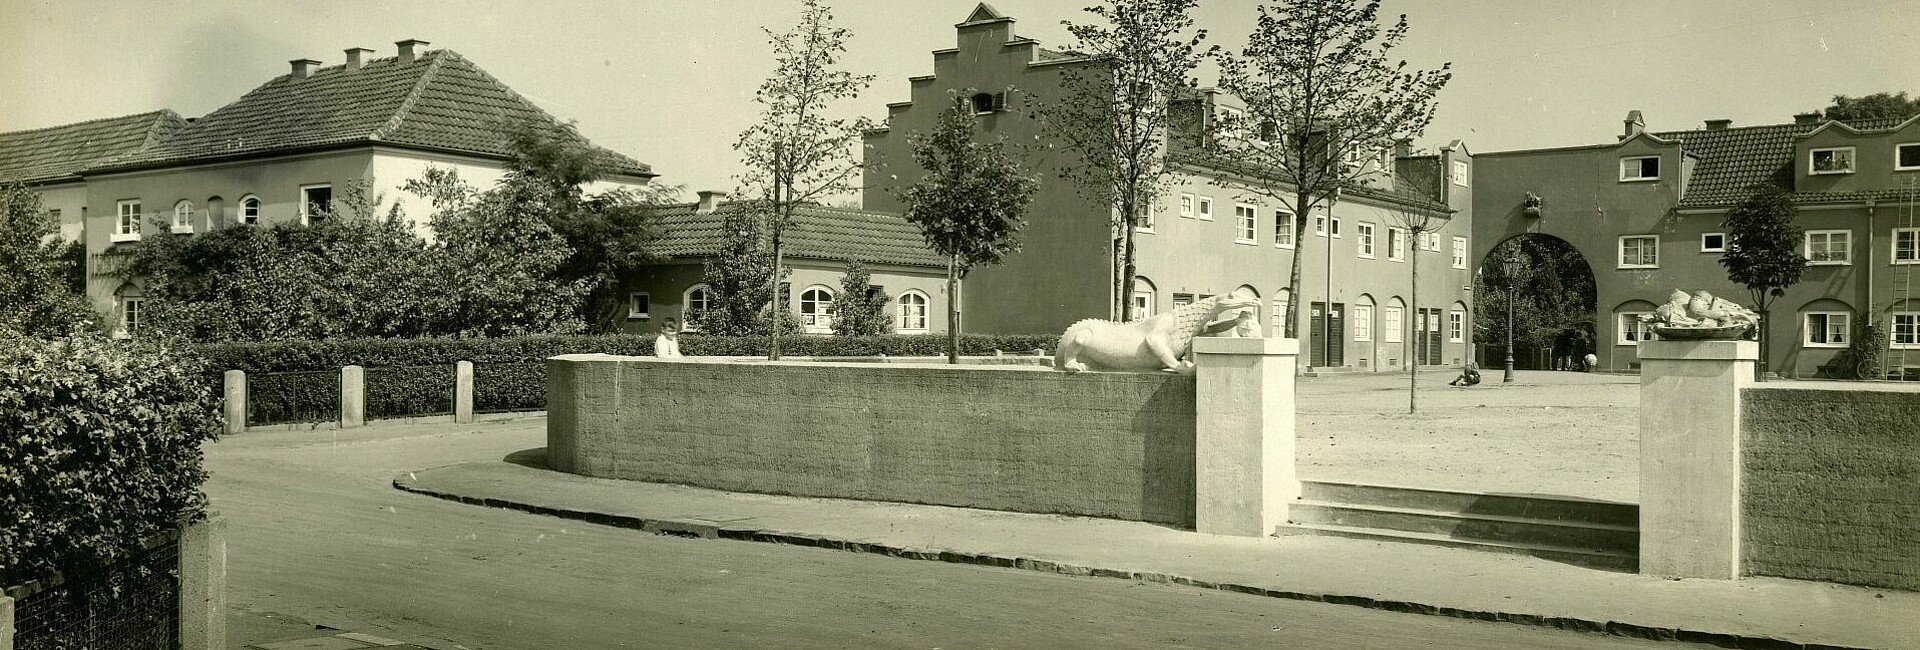 Historisches Foto der Nibelungensiedlung mit Zementfiguren aus der Nibelungensage